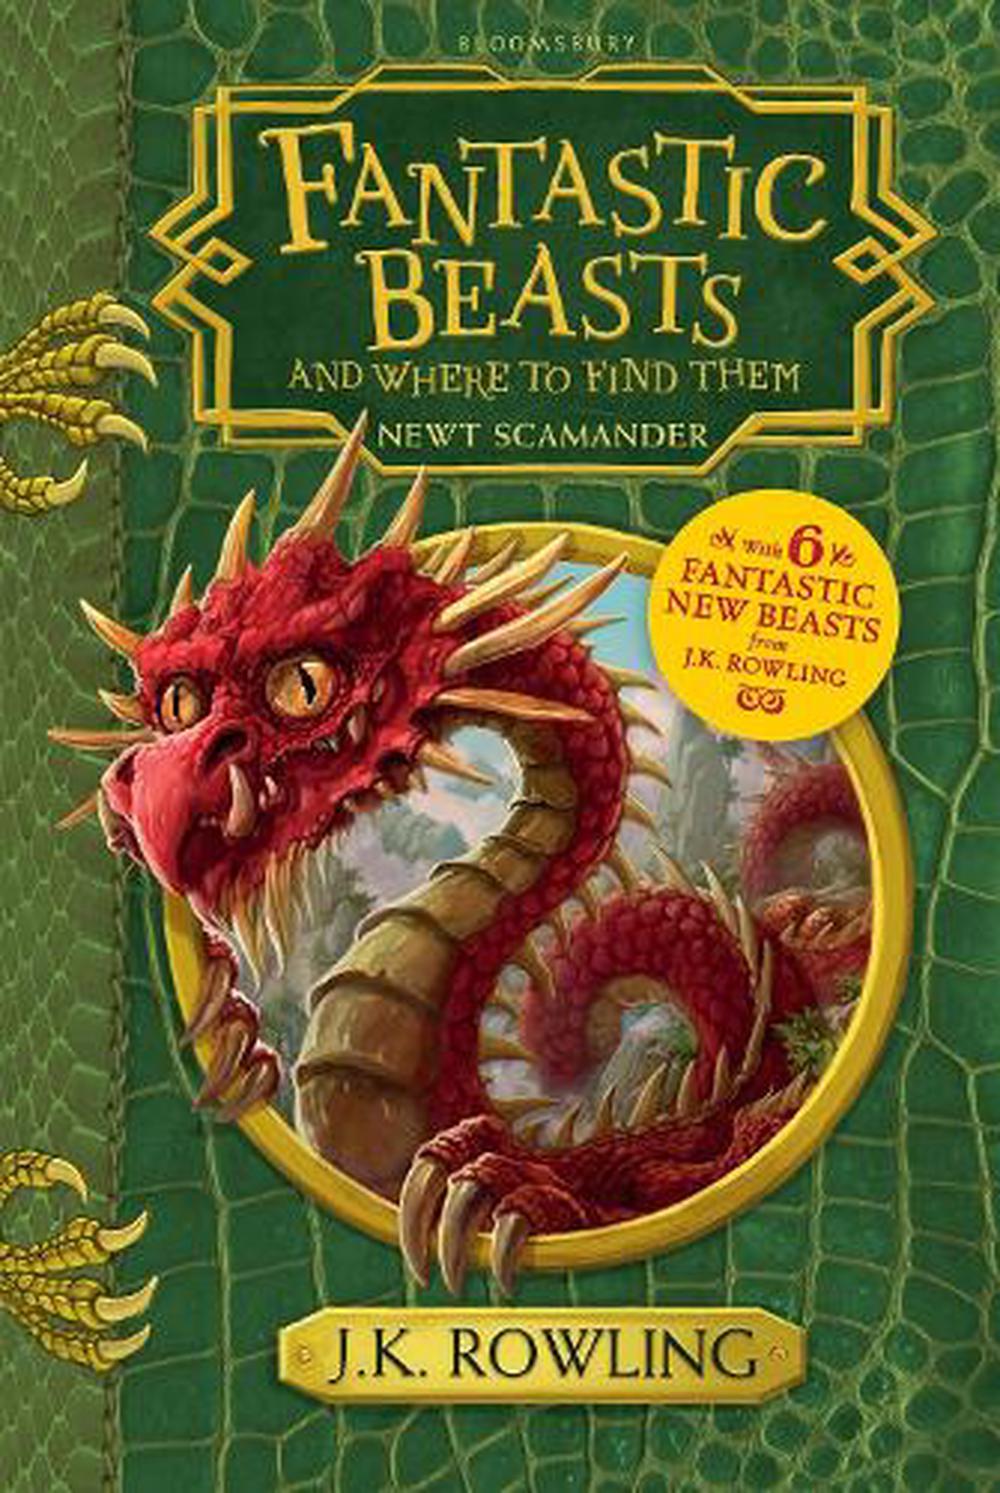 fantastic beasts illustrated